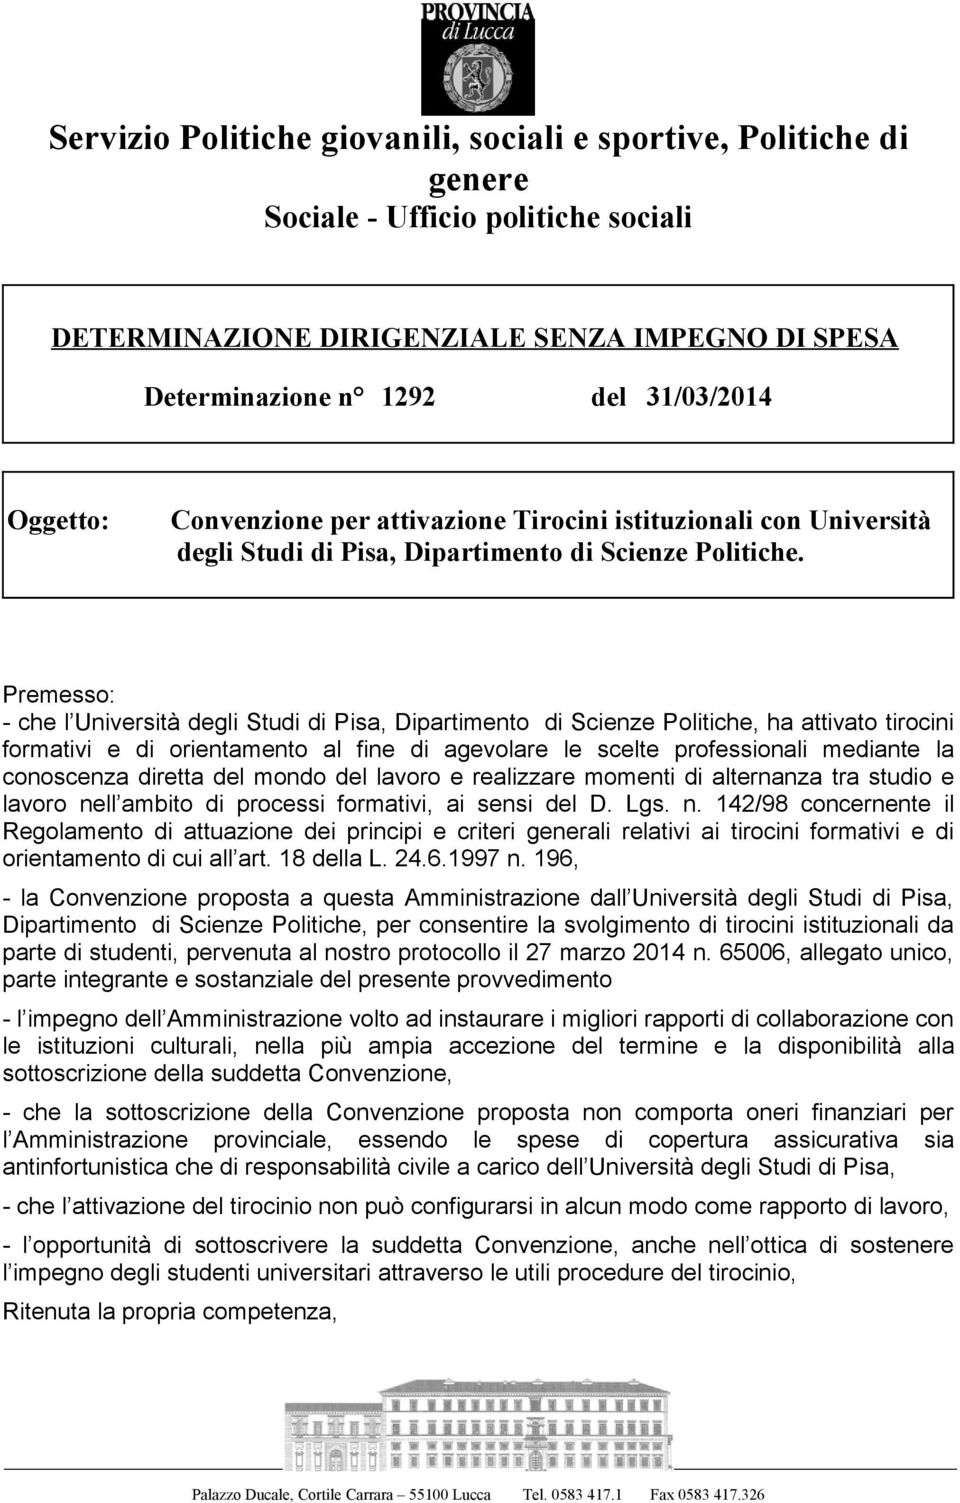 Premesso: - che l Università degli Studi di Pisa, Dipartimento di Scienze Politiche, ha attivato tirocini formativi e di orientamento al fine di agevolare le scelte professionali mediante la